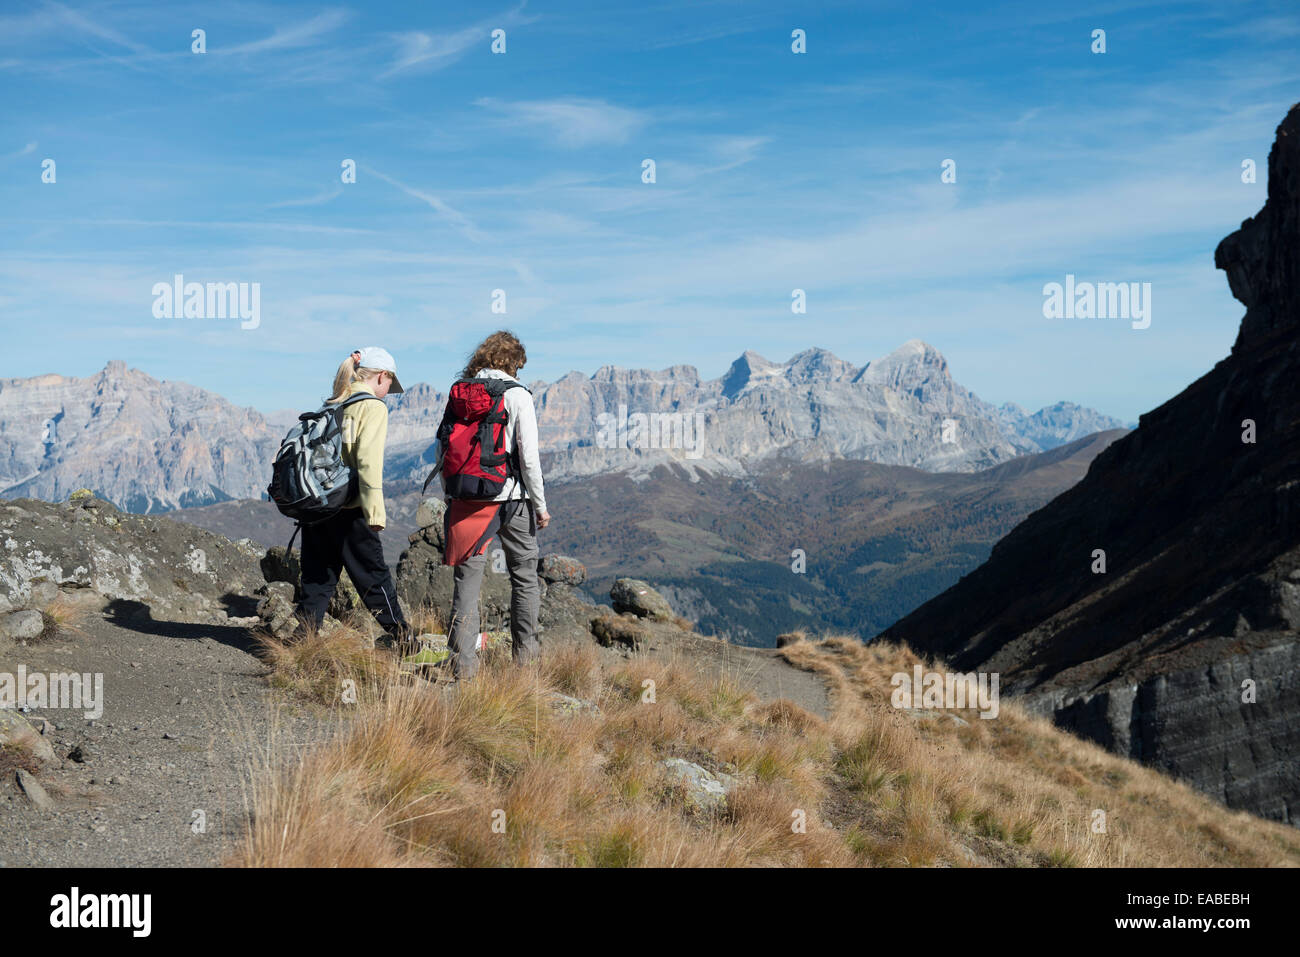 Frau Und Kind Wandern Auf Schotterweg - Frau und Kinder Wandern auf alpine Art Stockfoto